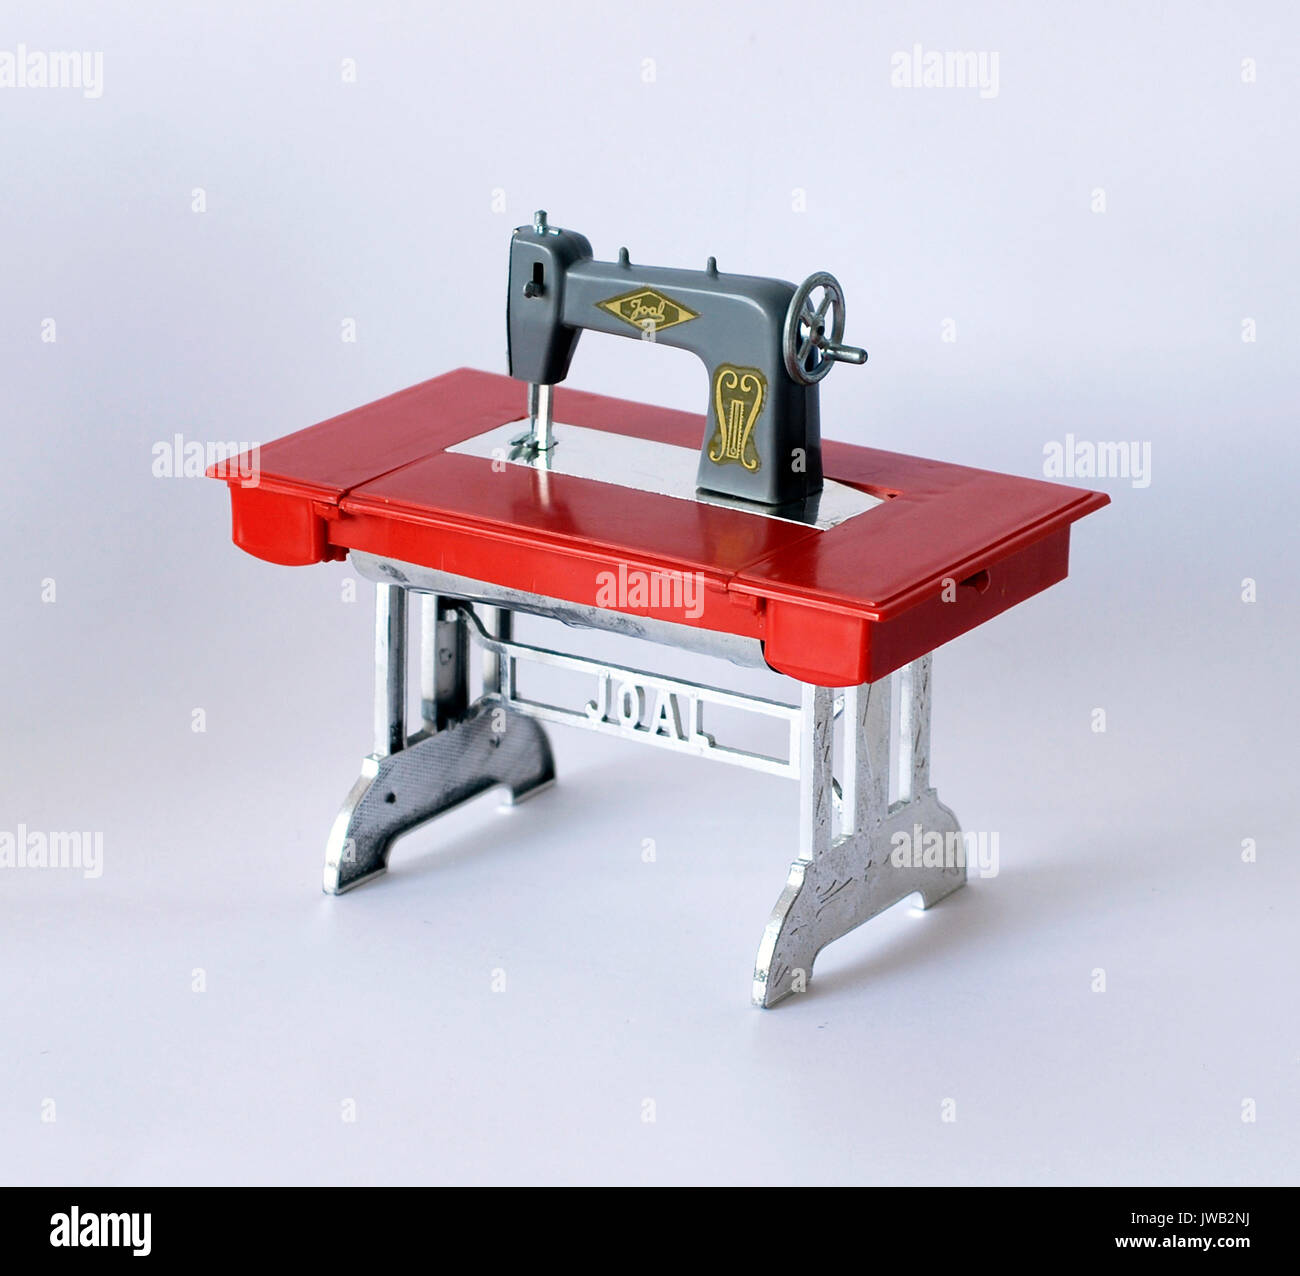 Máquina de coser de juguete, con su caja original. Marca Joal, Made in Spain Foto de stock